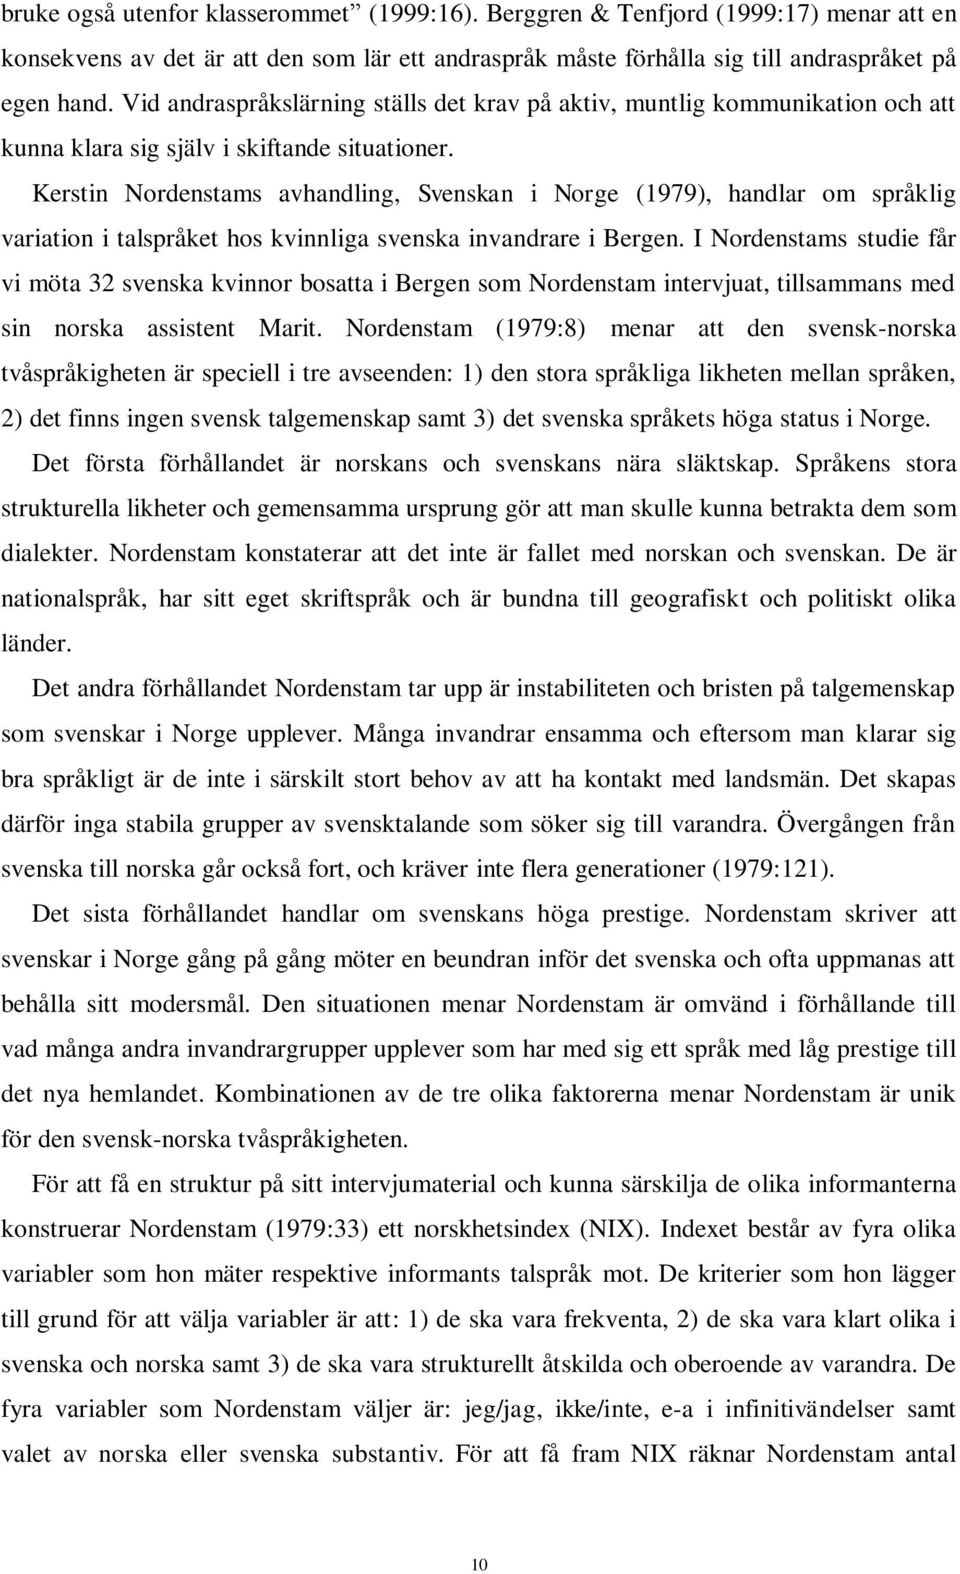 Kerstin Nordenstams avhandling, Svenskan i Norge (1979), handlar om språklig variation i talspråket hos kvinnliga svenska invandrare i Bergen.